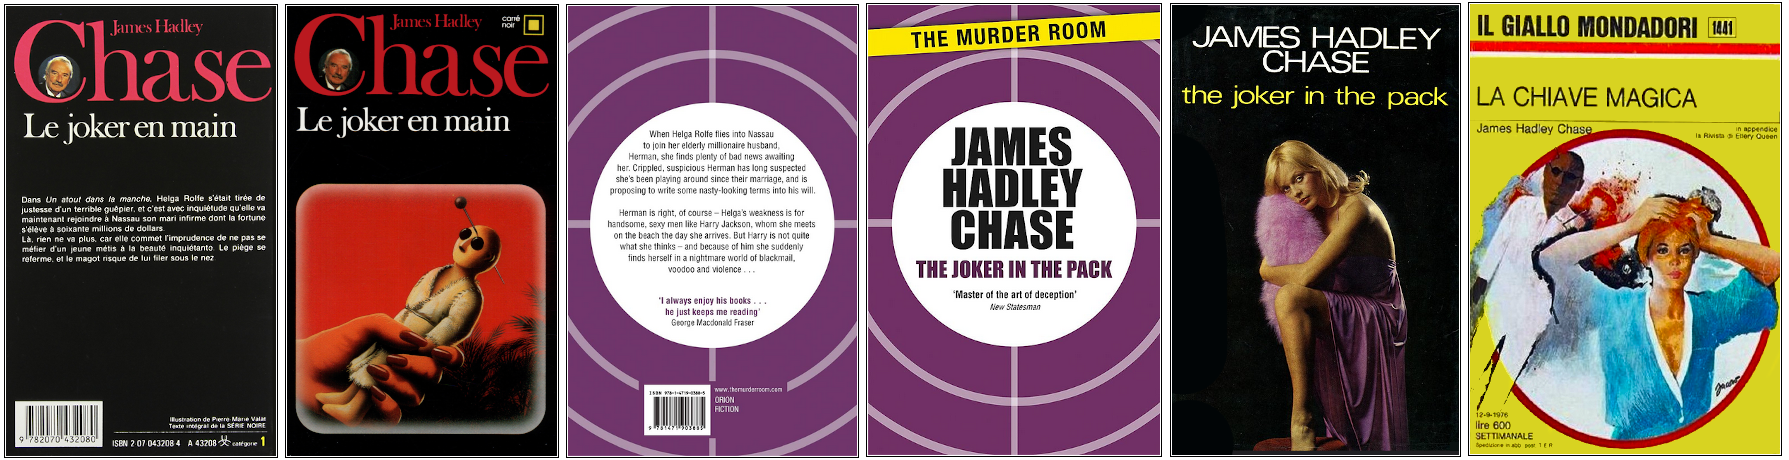 James Hadley Chase - Le Joker en main - Éditions Carré noir, Orion, Robert Hale et Mondadori